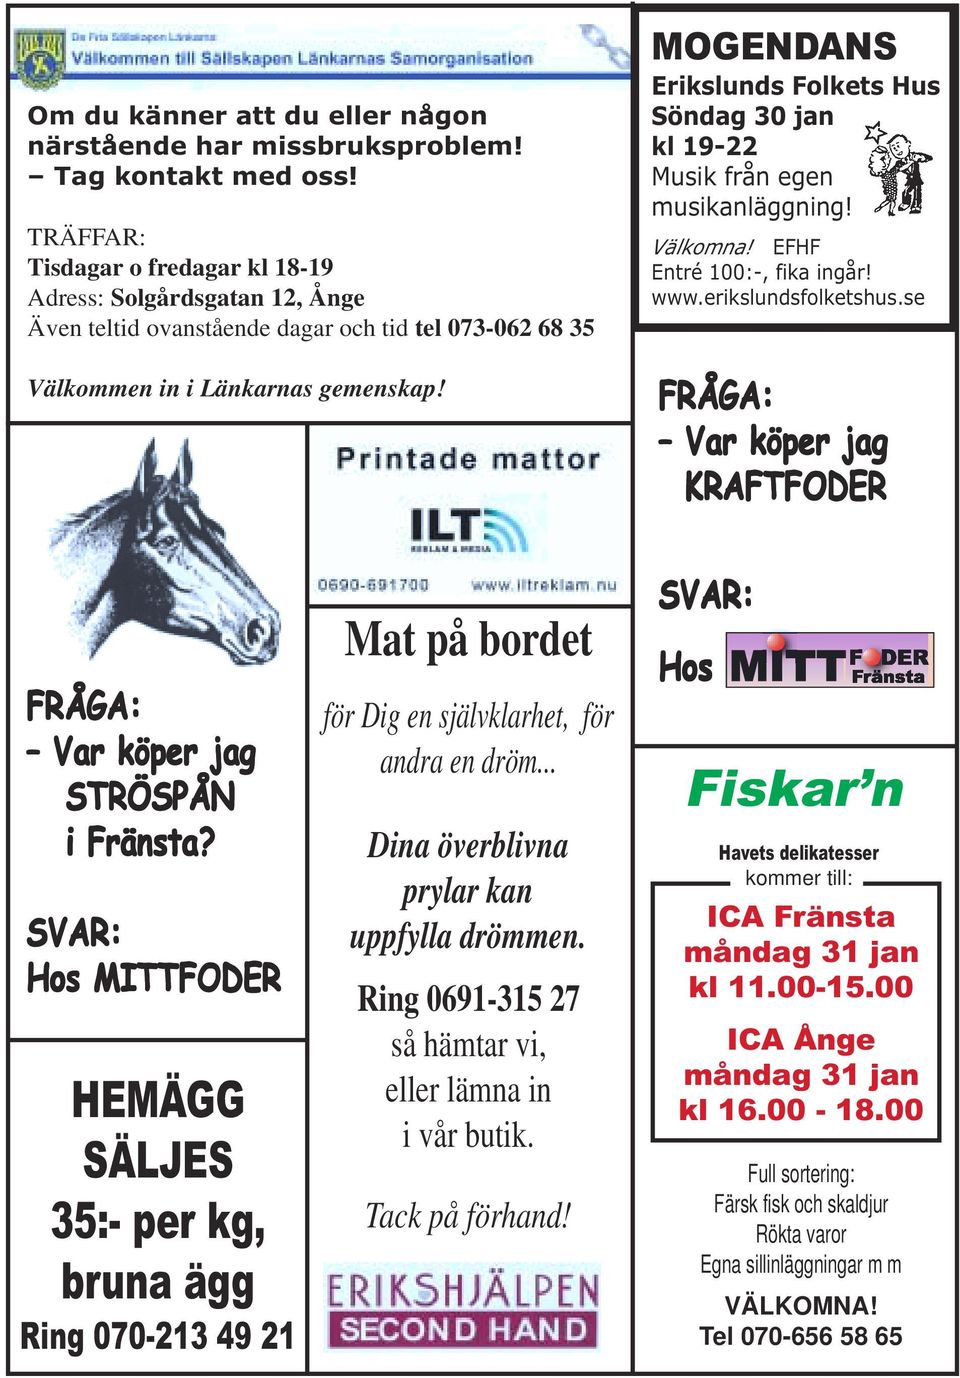 MOGENDANS Erikslunds Folkets Hus Söndag 30 jan kl 19-22 Musik från egen musikanläggning! Välkomna! EFHF Entré 100:-, fika ingår! www.erikslundsfolketshus.